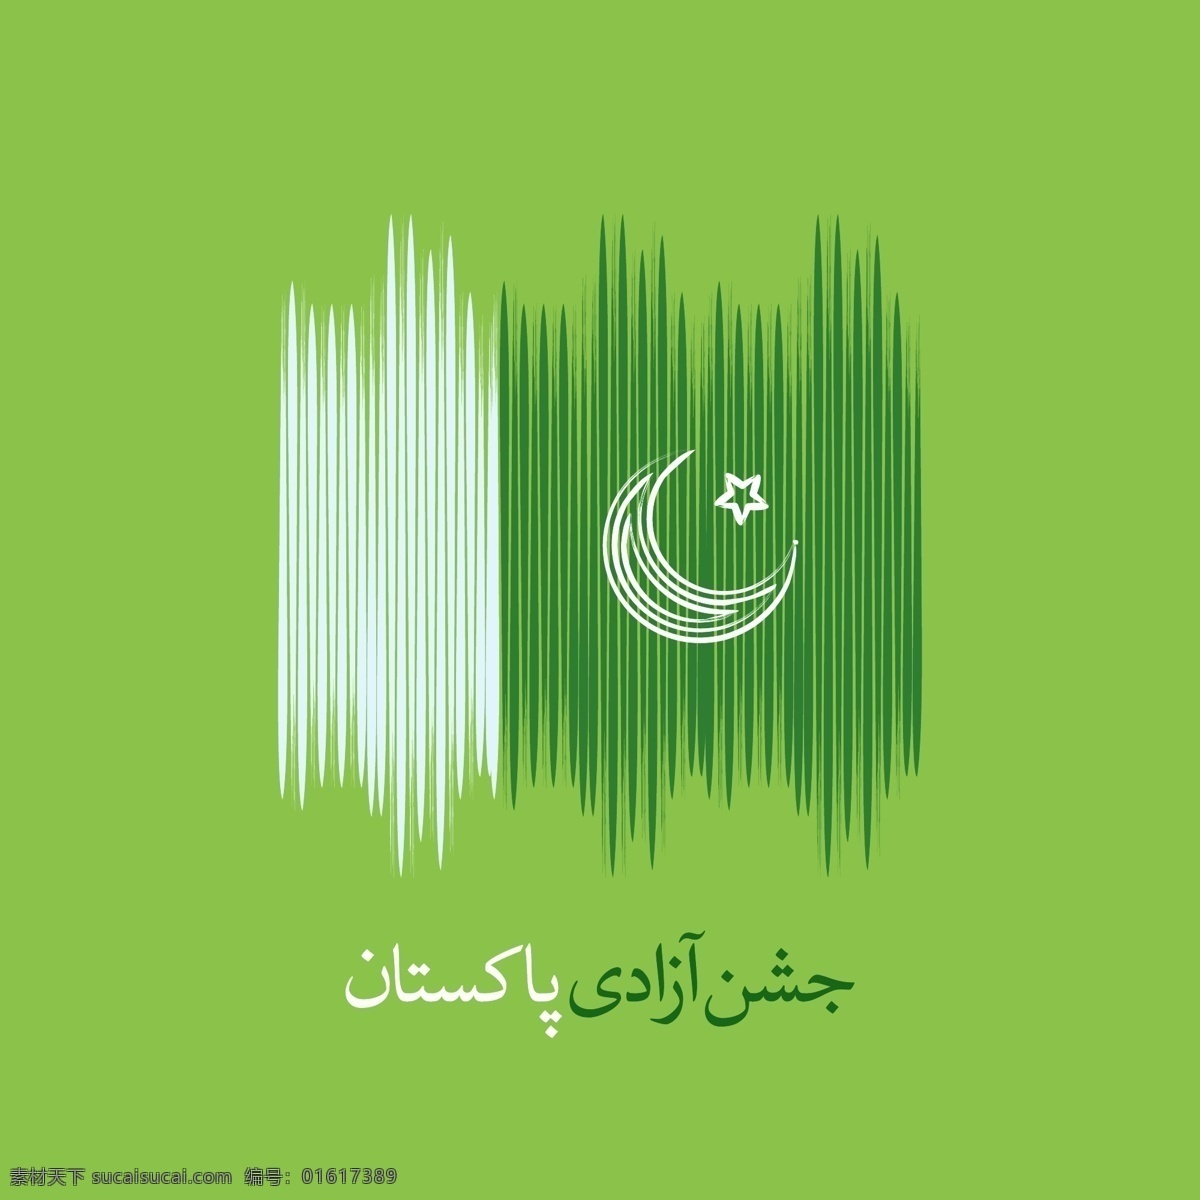 巴基斯坦 国旗 独立日 背景 抽象 风格 线条 快乐 庆祝 节日 国家 身份 自由 文化 亚洲 日 革命 政府 爱国